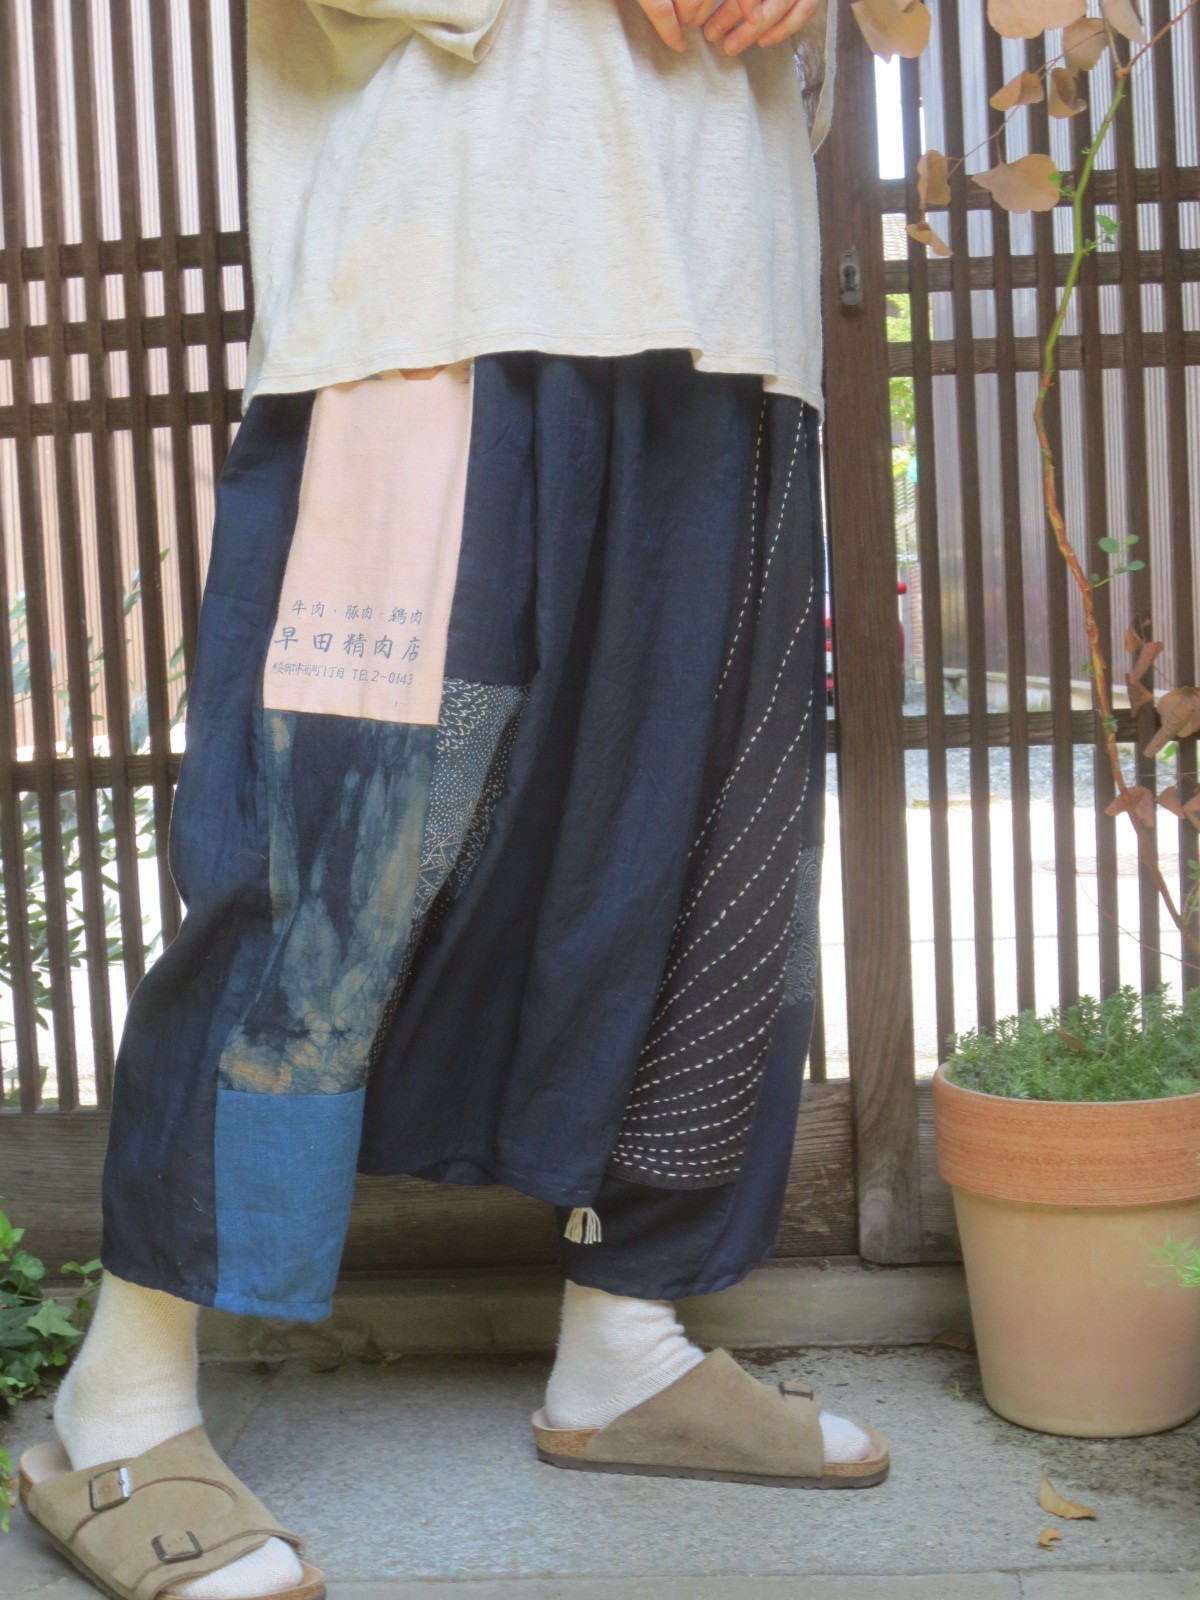 新品即決 古布藍染風呂敷 刺し子 - クラフト 布製品 - www.fonsti.org